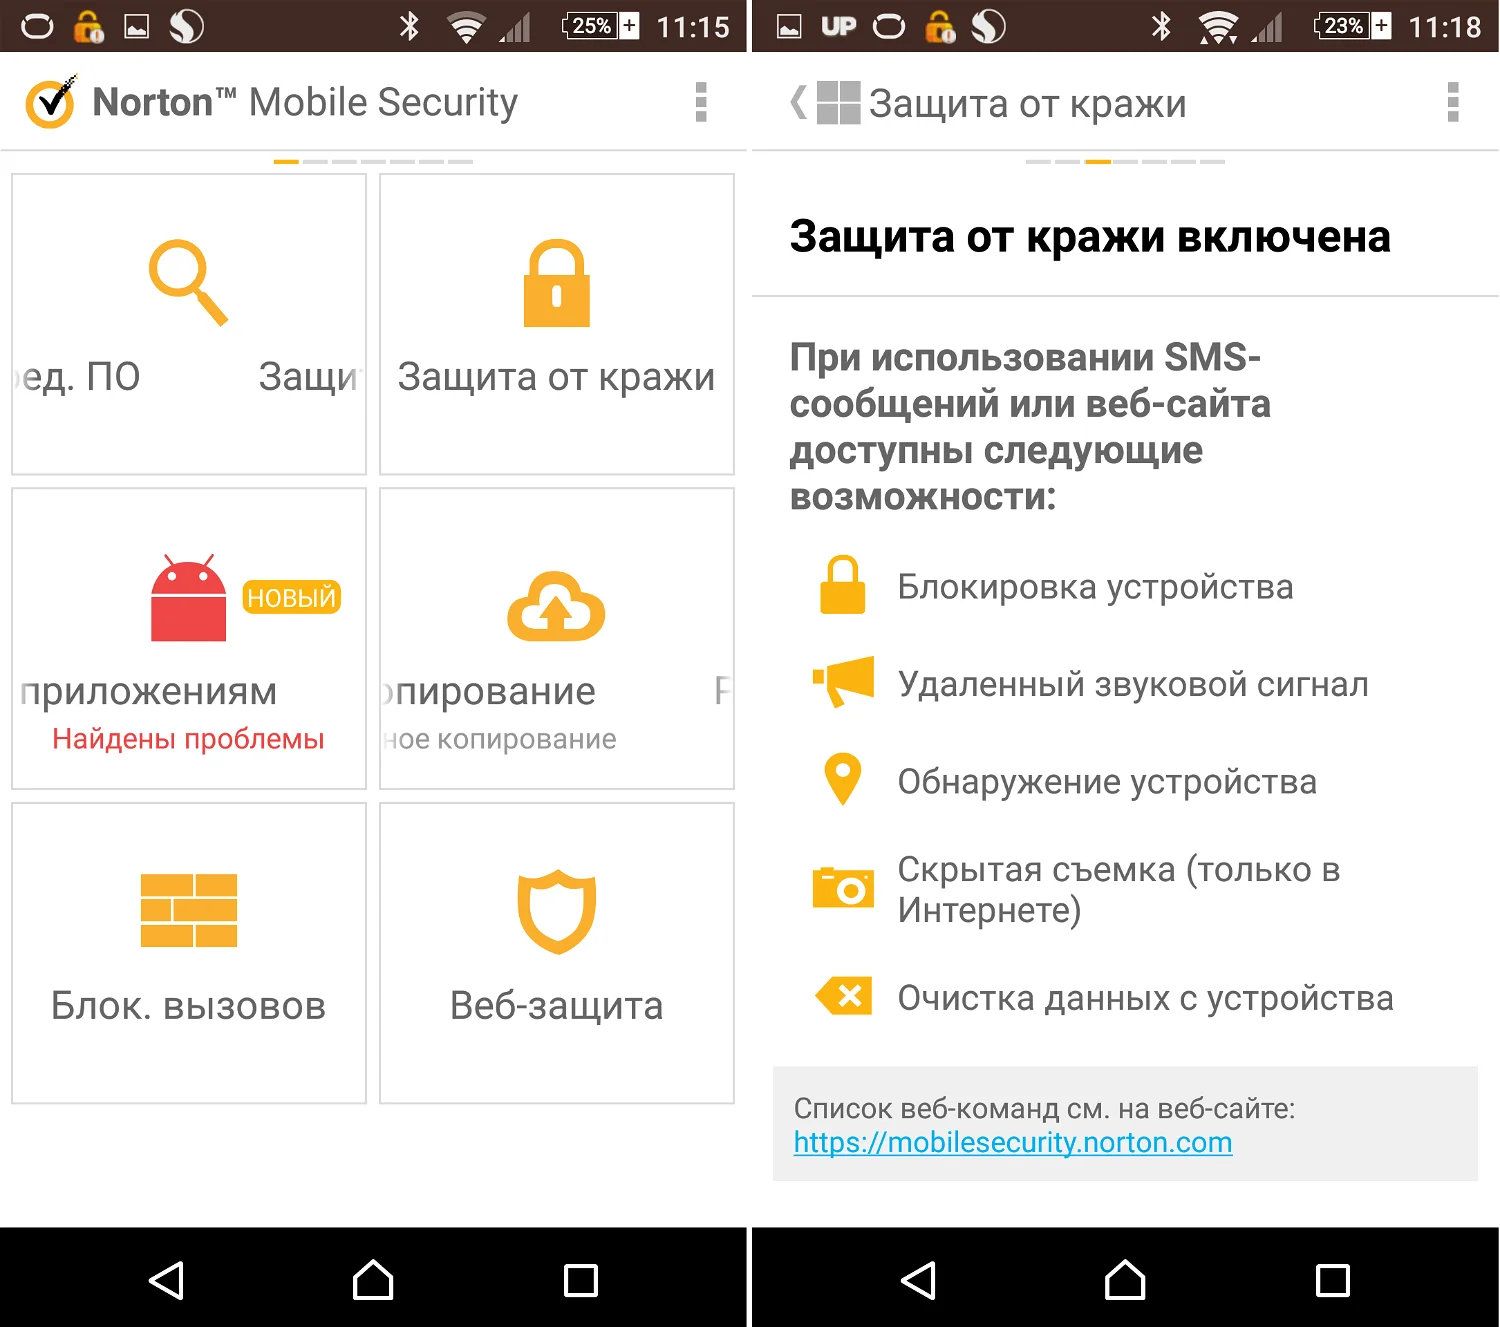 Скріншоти російською мовою зроблені порталом Comss